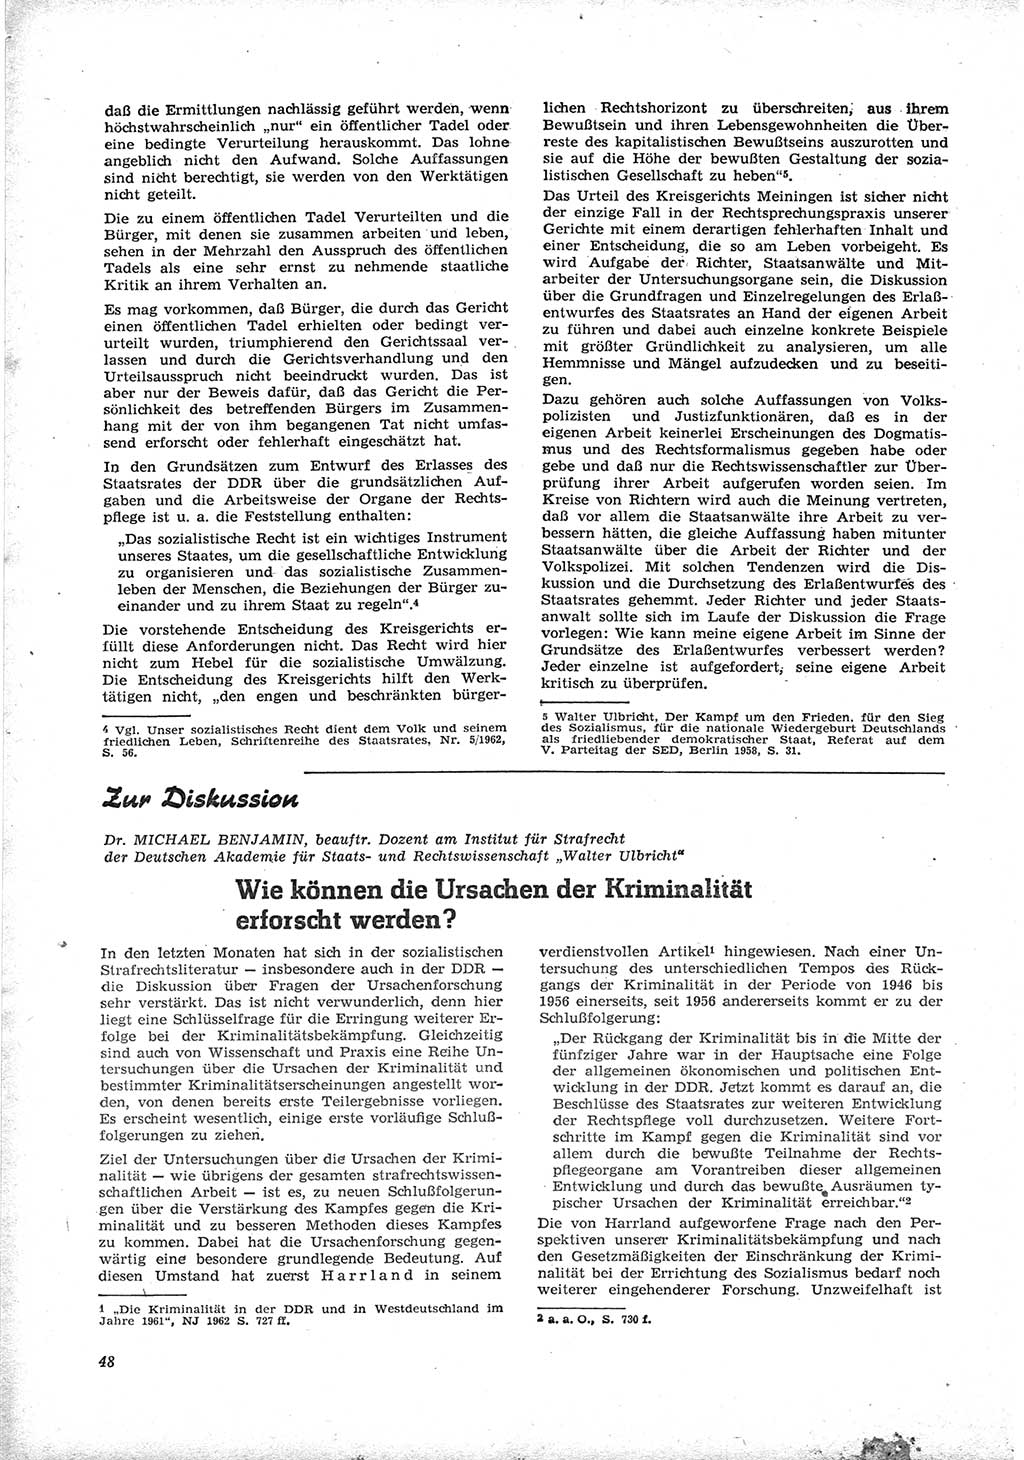 Neue Justiz (NJ), Zeitschrift für Recht und Rechtswissenschaft [Deutsche Demokratische Republik (DDR)], 17. Jahrgang 1963, Seite 48 (NJ DDR 1963, S. 48)